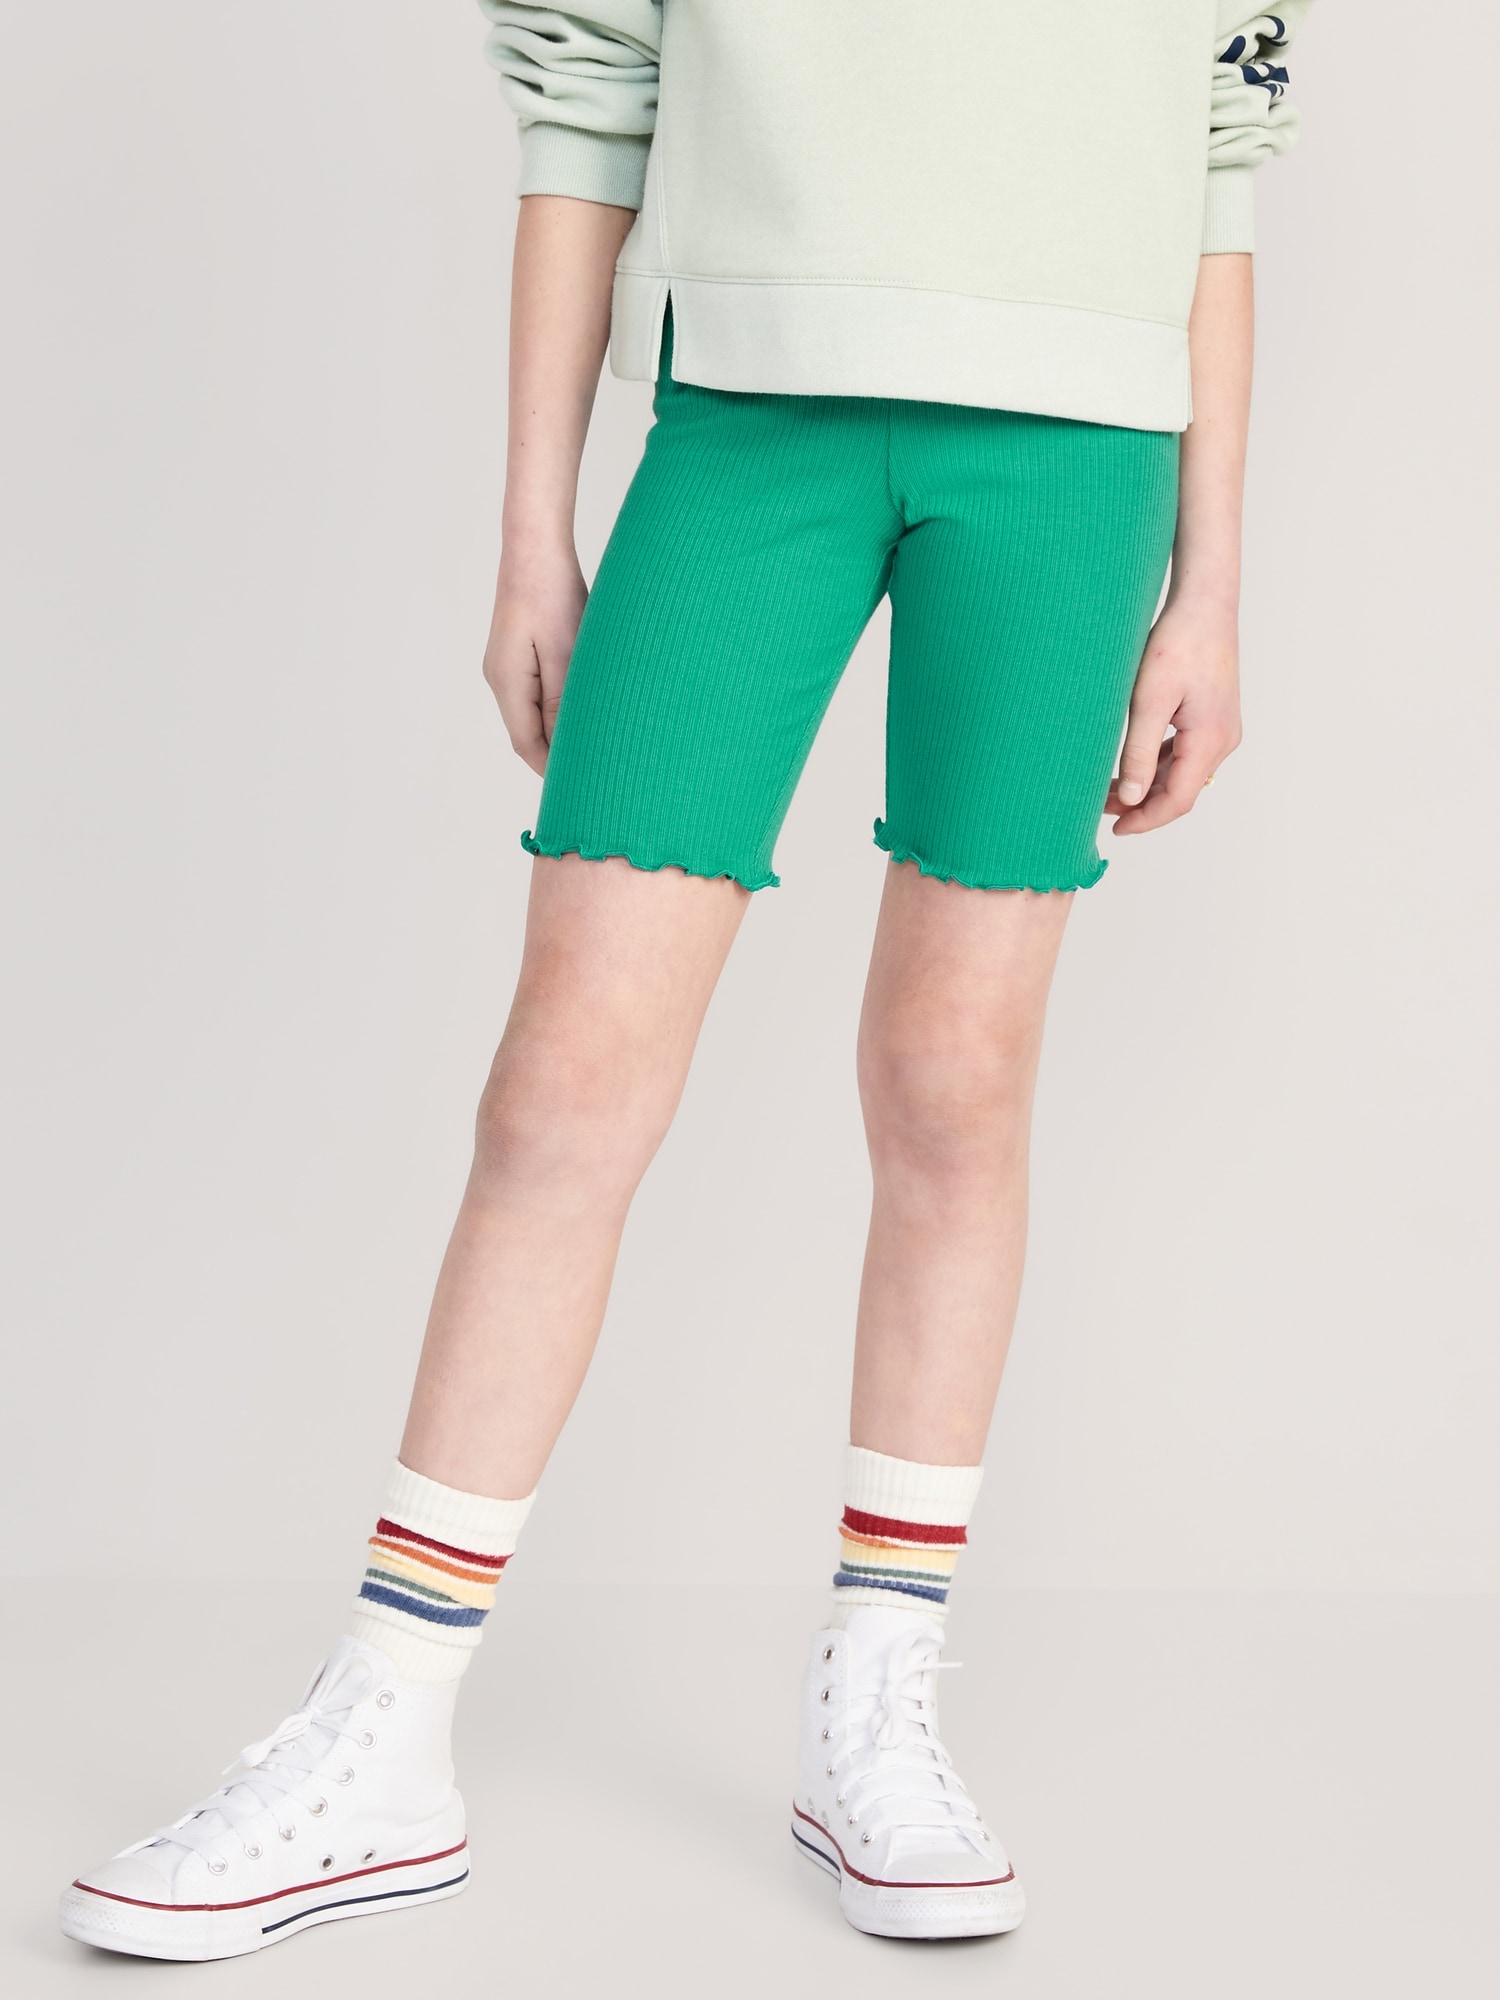 Old Navy Rib-Knit Lettuce-Edged Long Biker Shorts for Girls green. 1